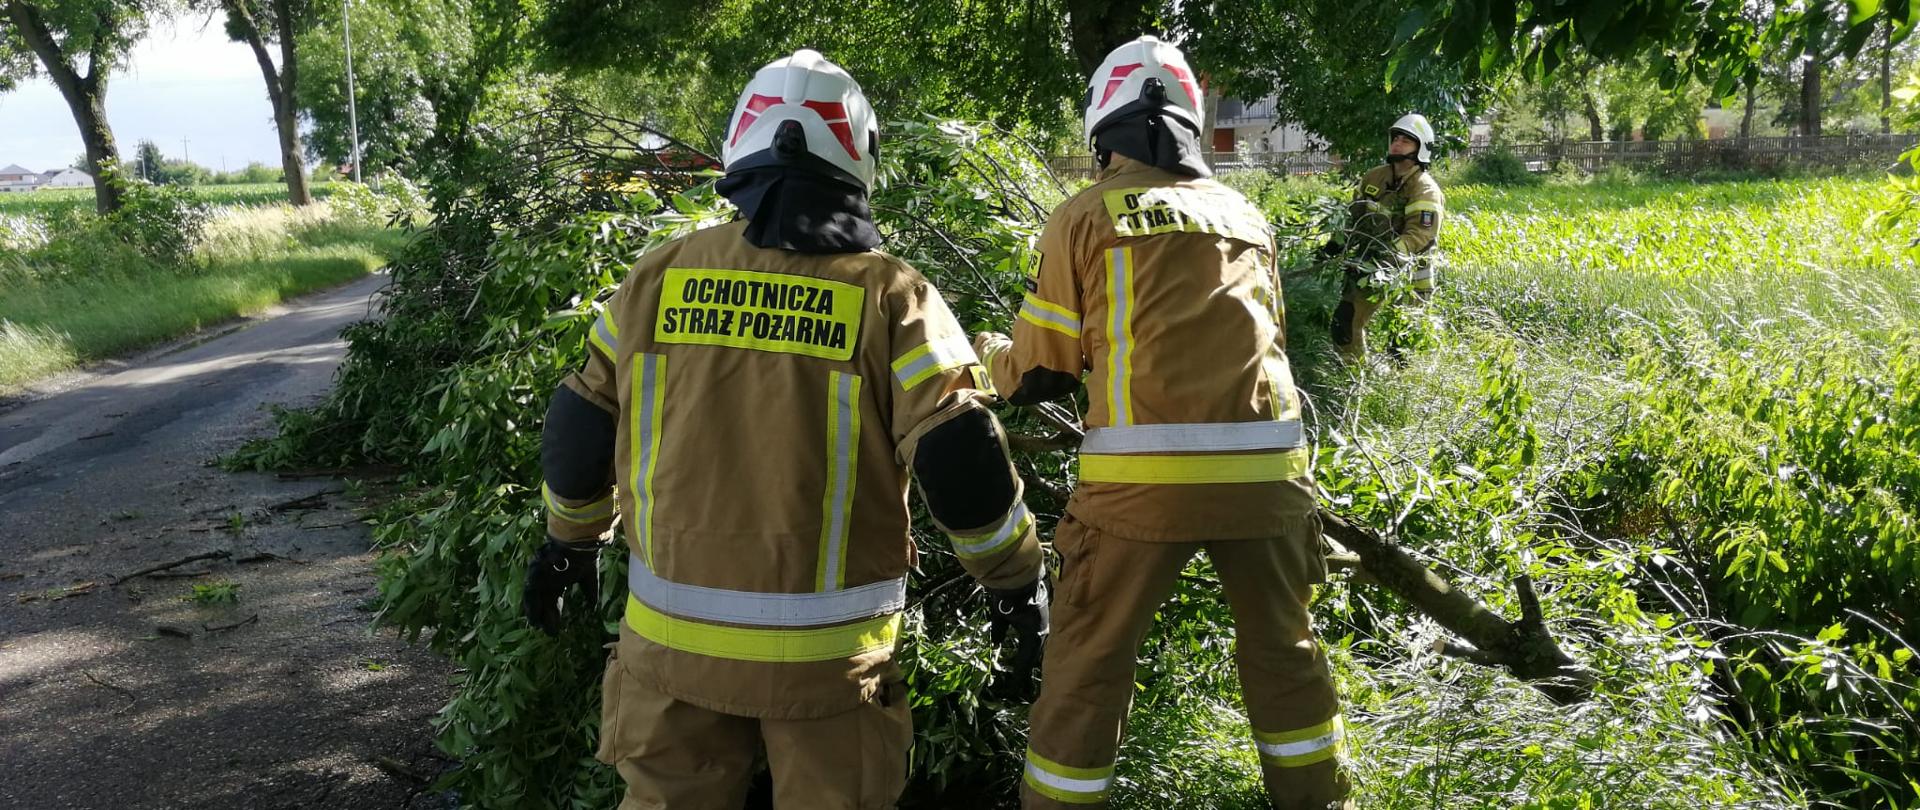 Dwóch strażaków w mundurach specjalnych usuwa powalony konar drzewa na drodze. W tle trzeci strażak z pilarką do cięcia drewna. Konar leży na drodze. Jest pogodnie.